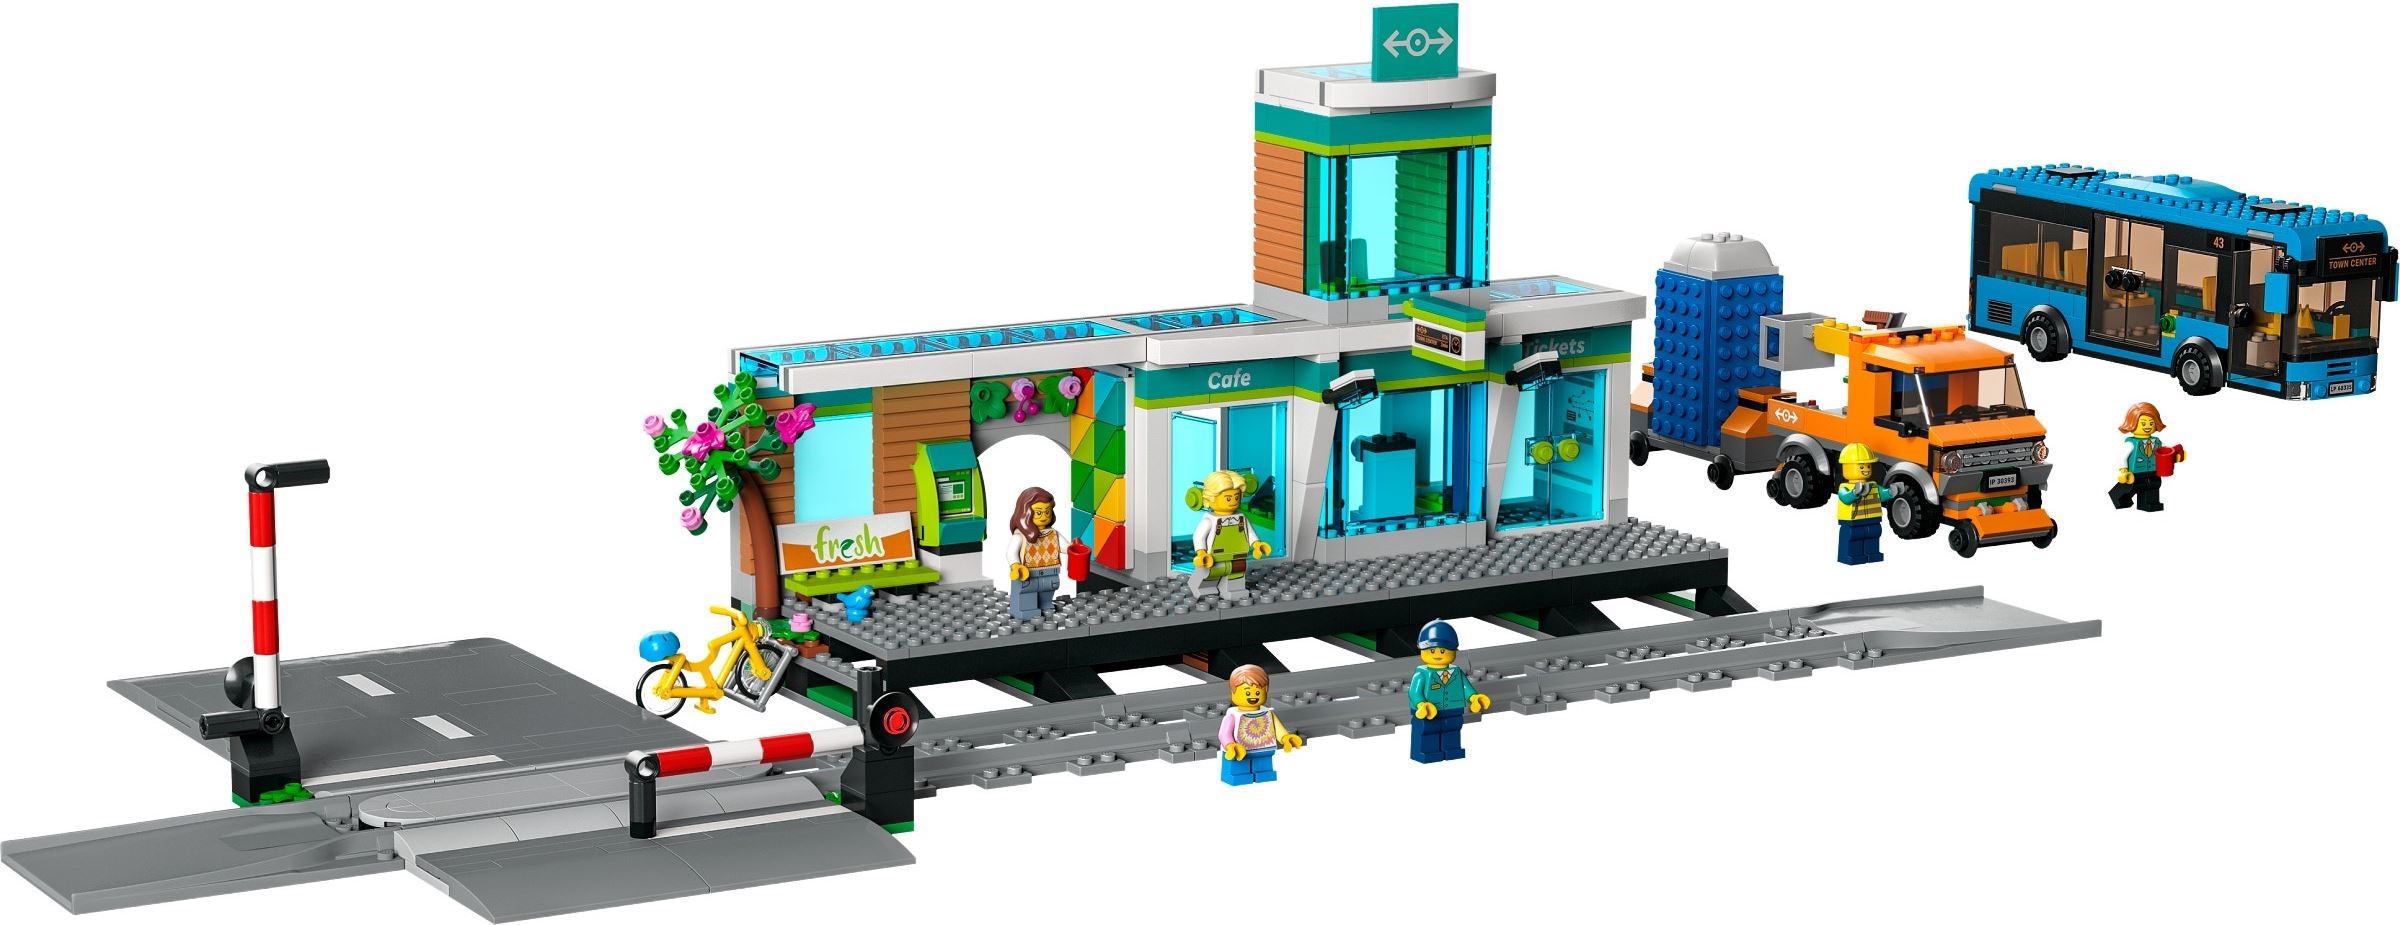 LEGO CITY - Brick Fanatics - Nouvelles, critiques et constructions LEGO